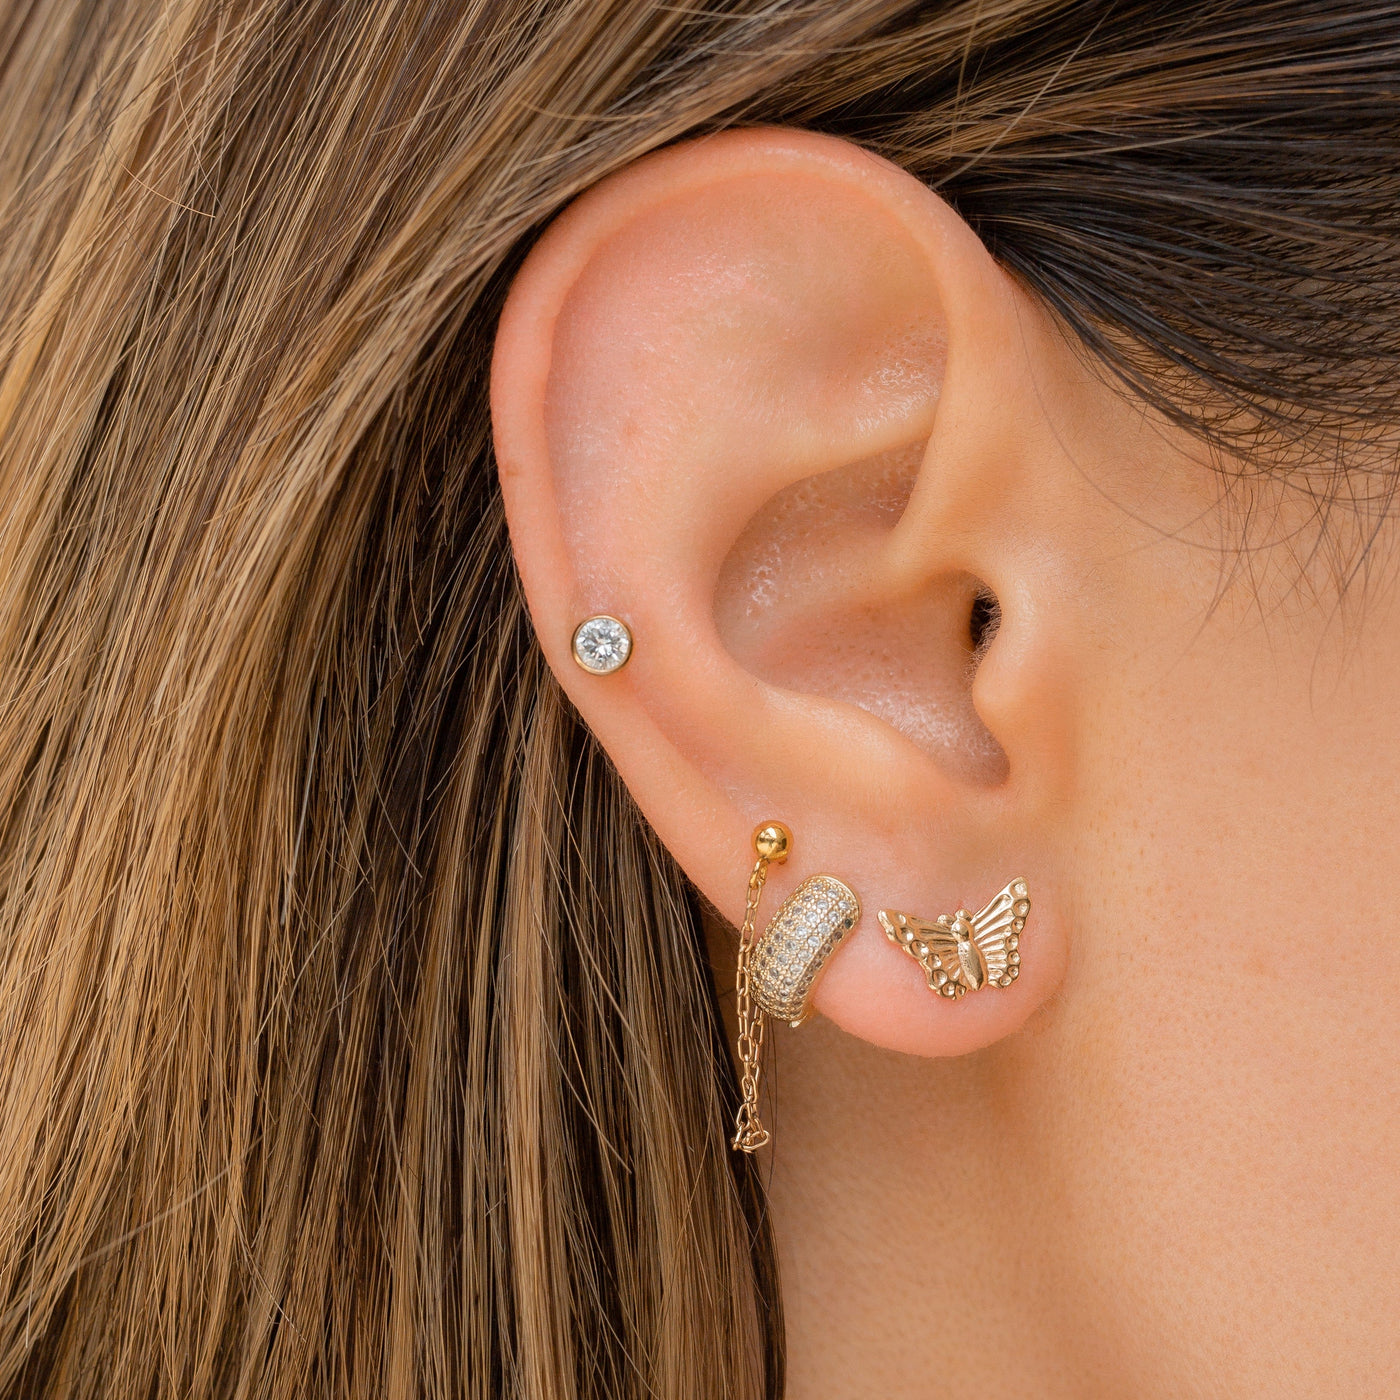 Gold Filled Butterfly stud earrings